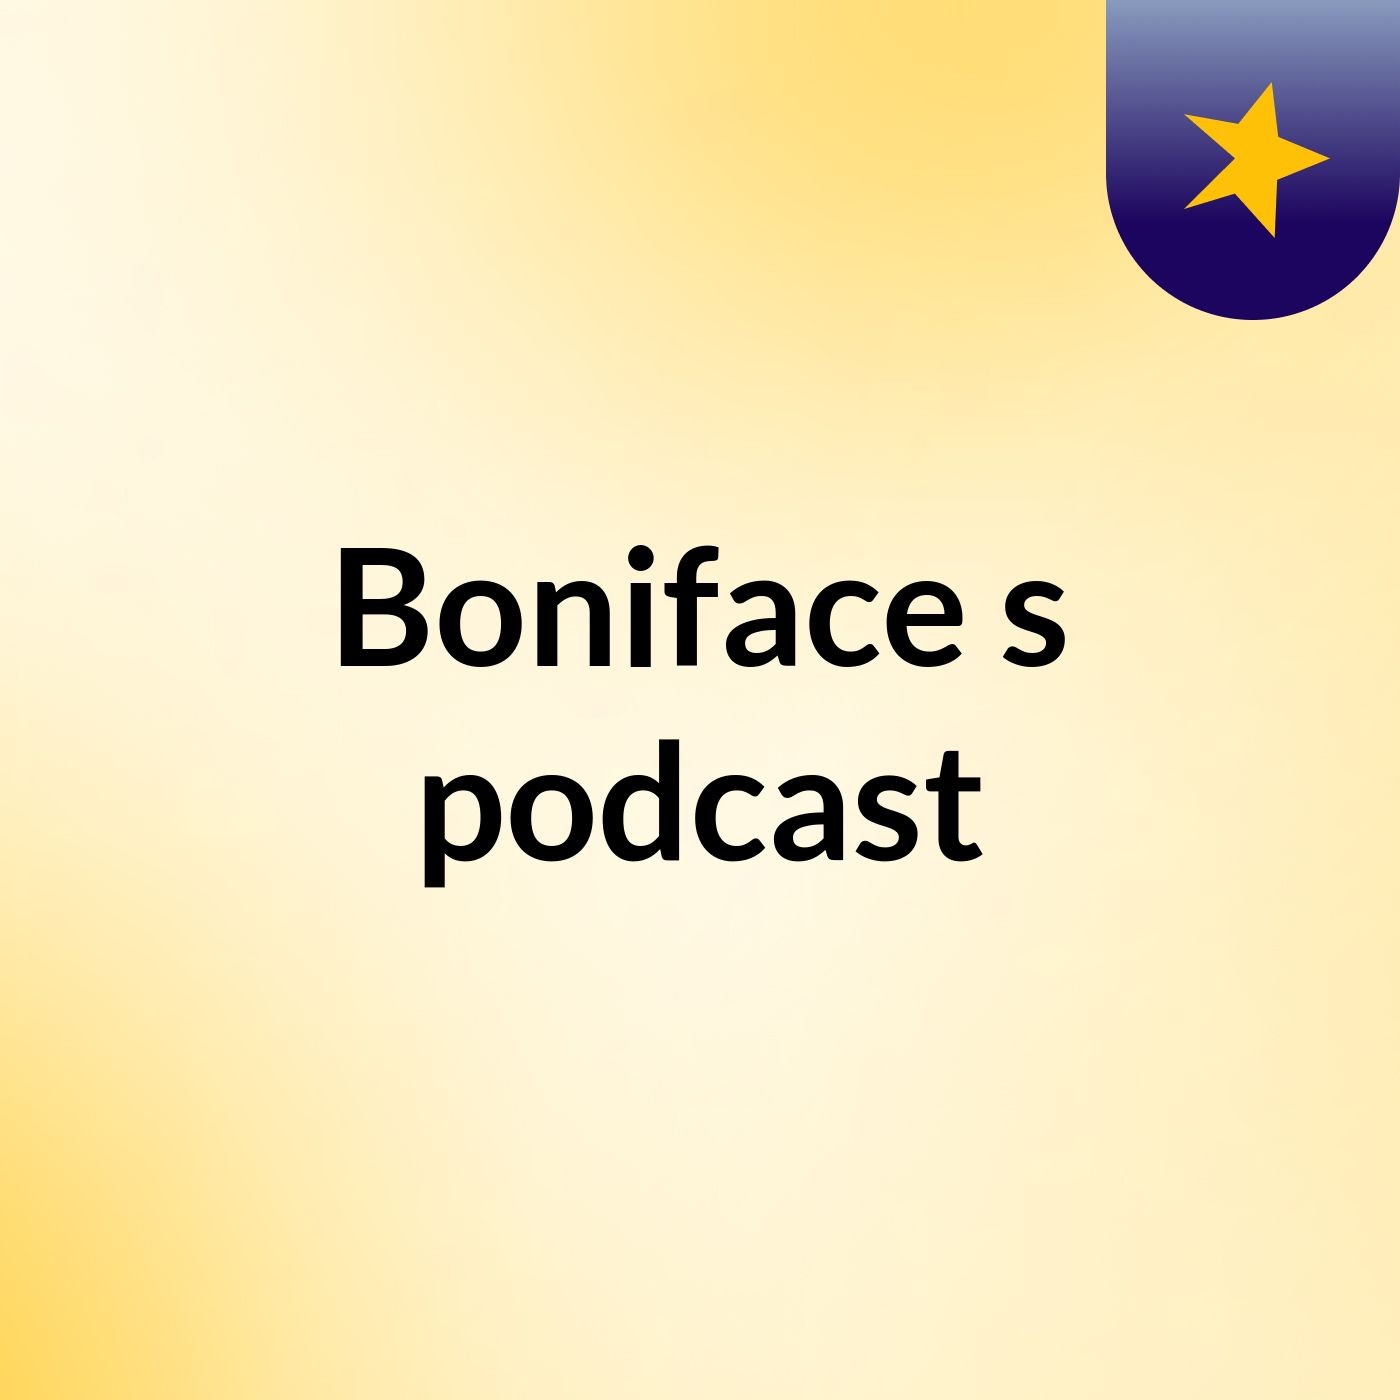 Episode 6 - Boniface's podcast